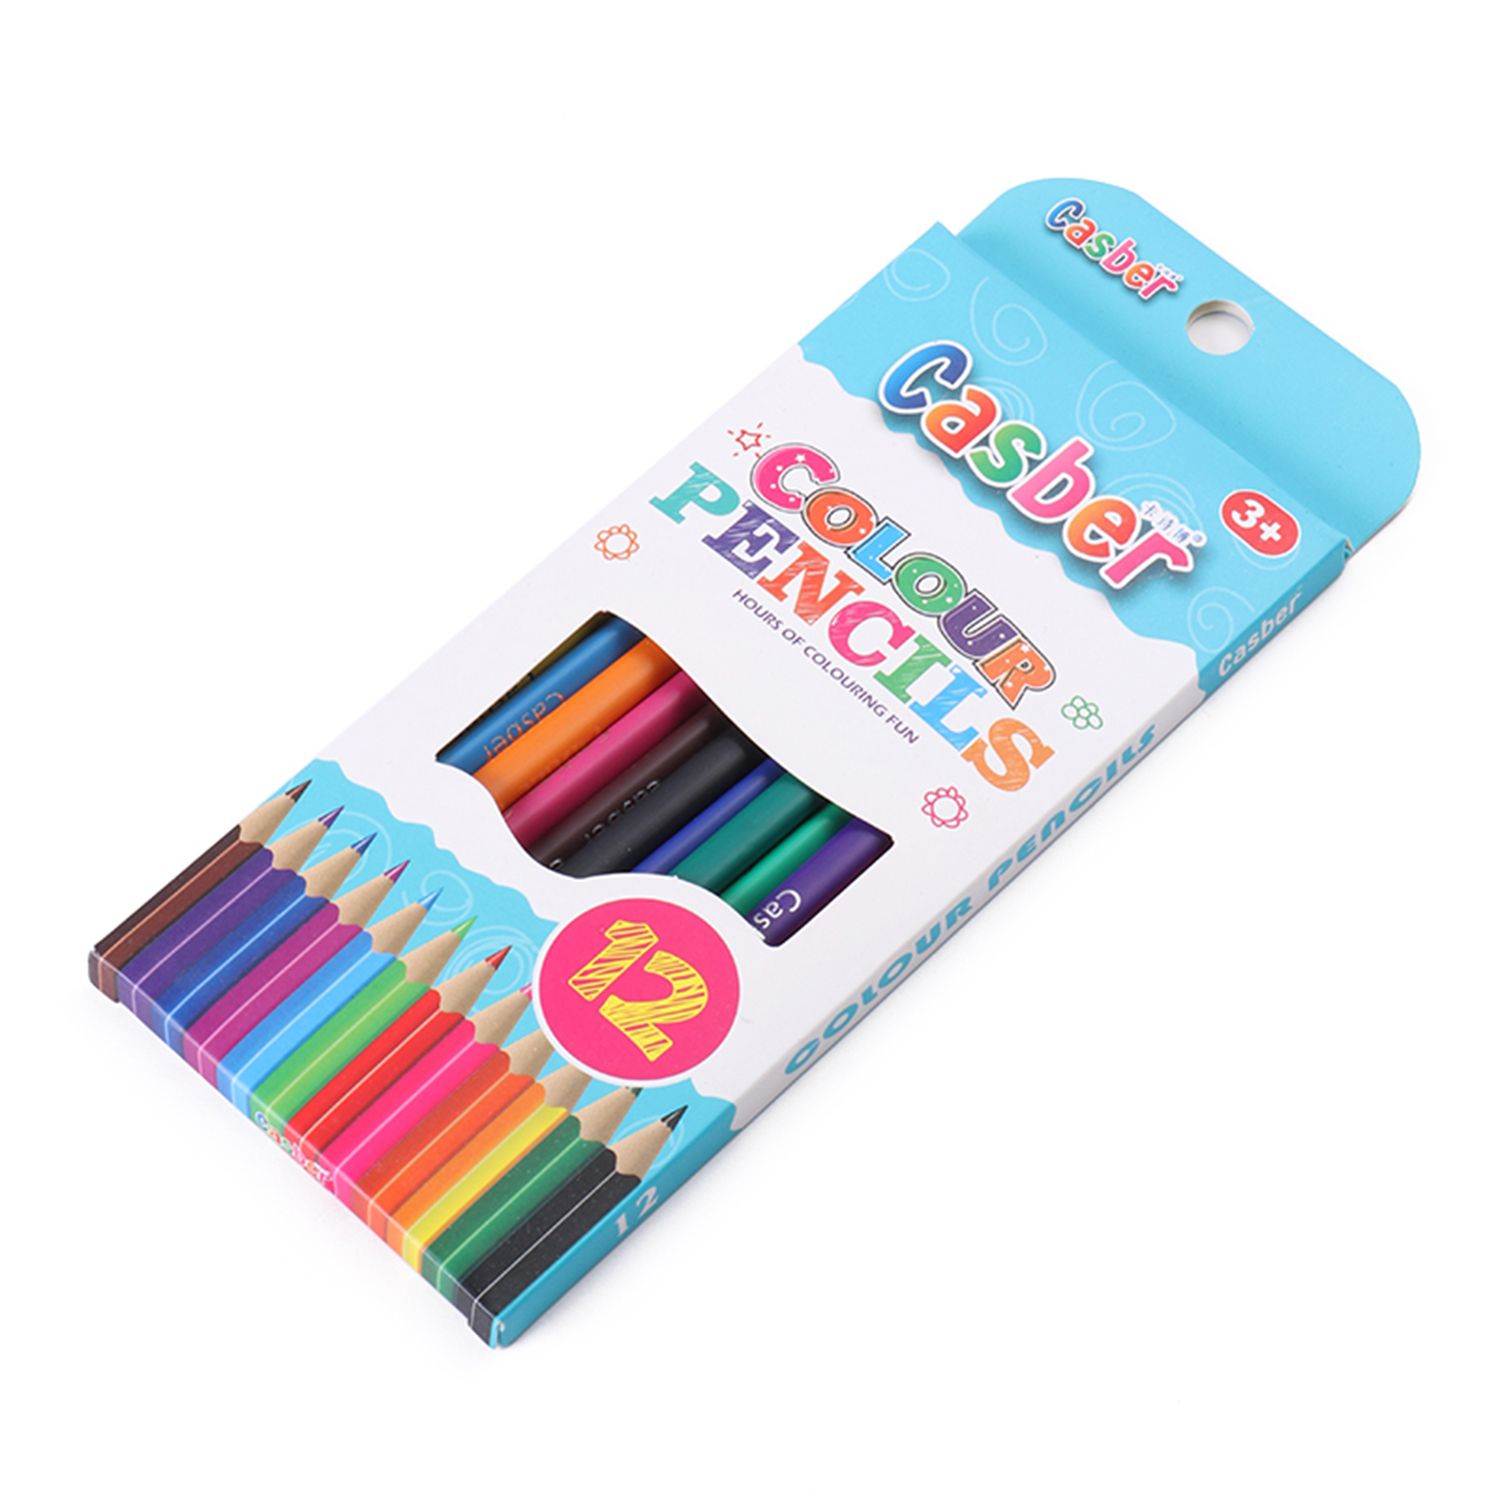 彩盒精装12色美术专用画笔 小学生秘密花园填色笔详情图1